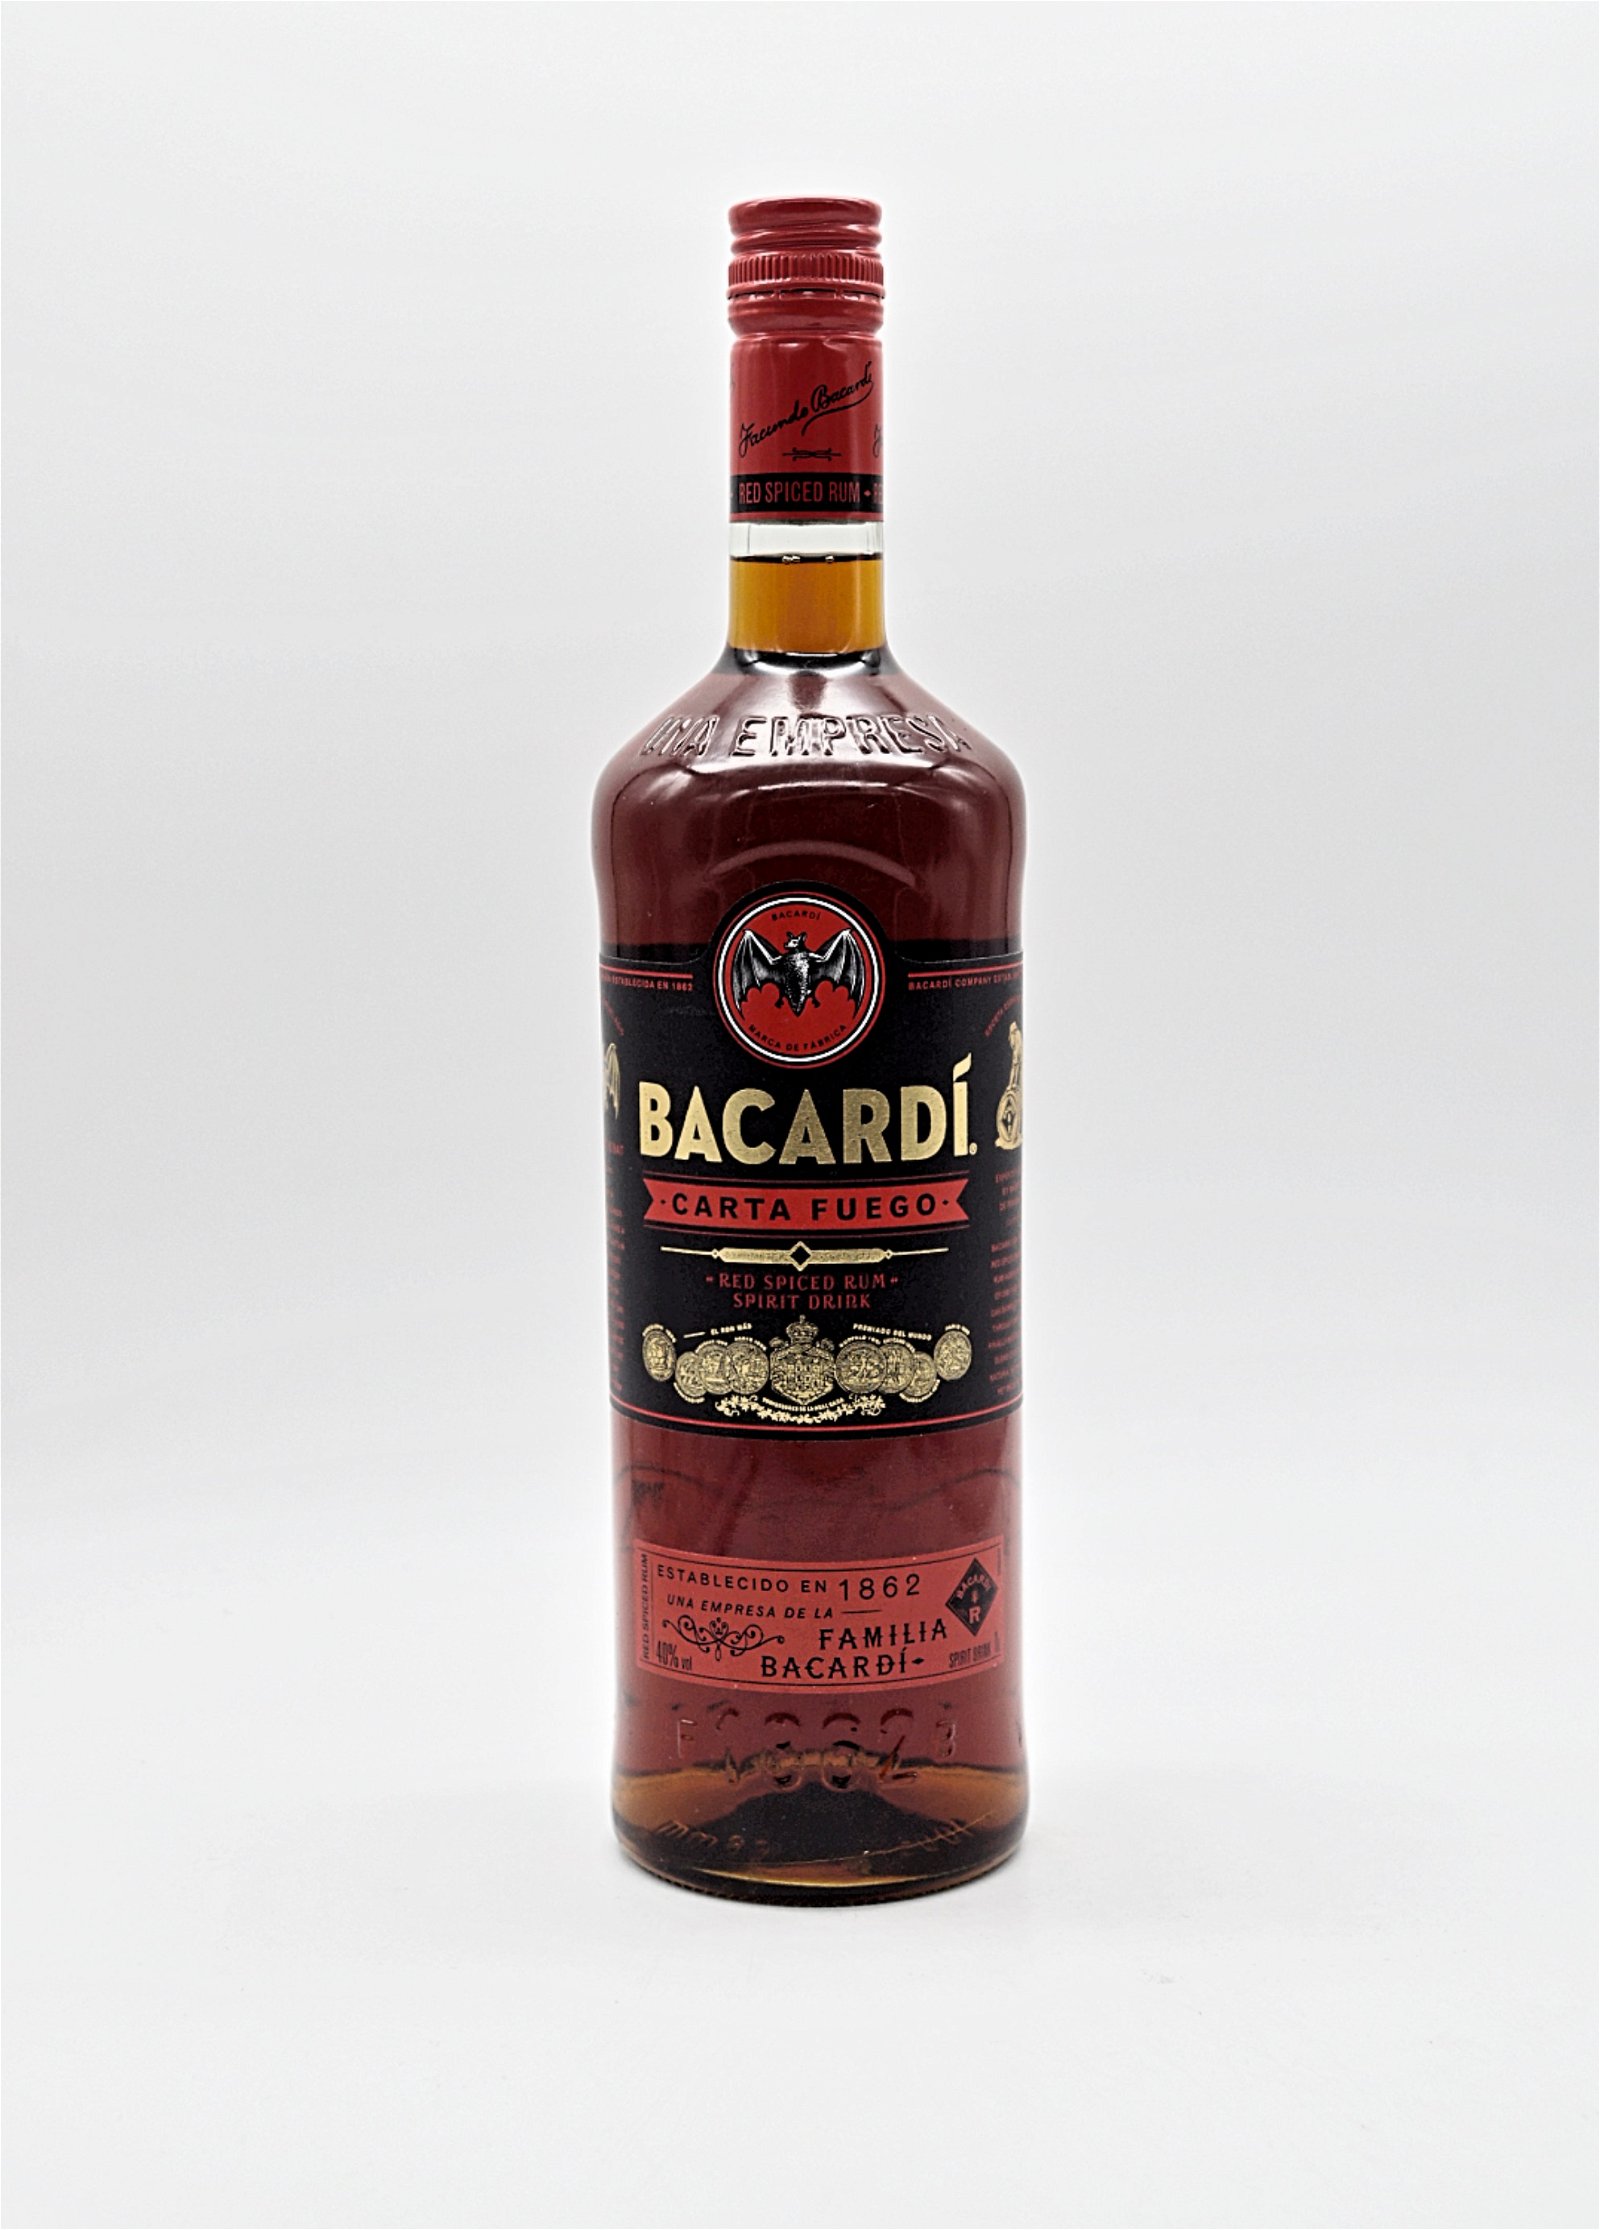 Bacardi Carta Fuego Spiced Rum